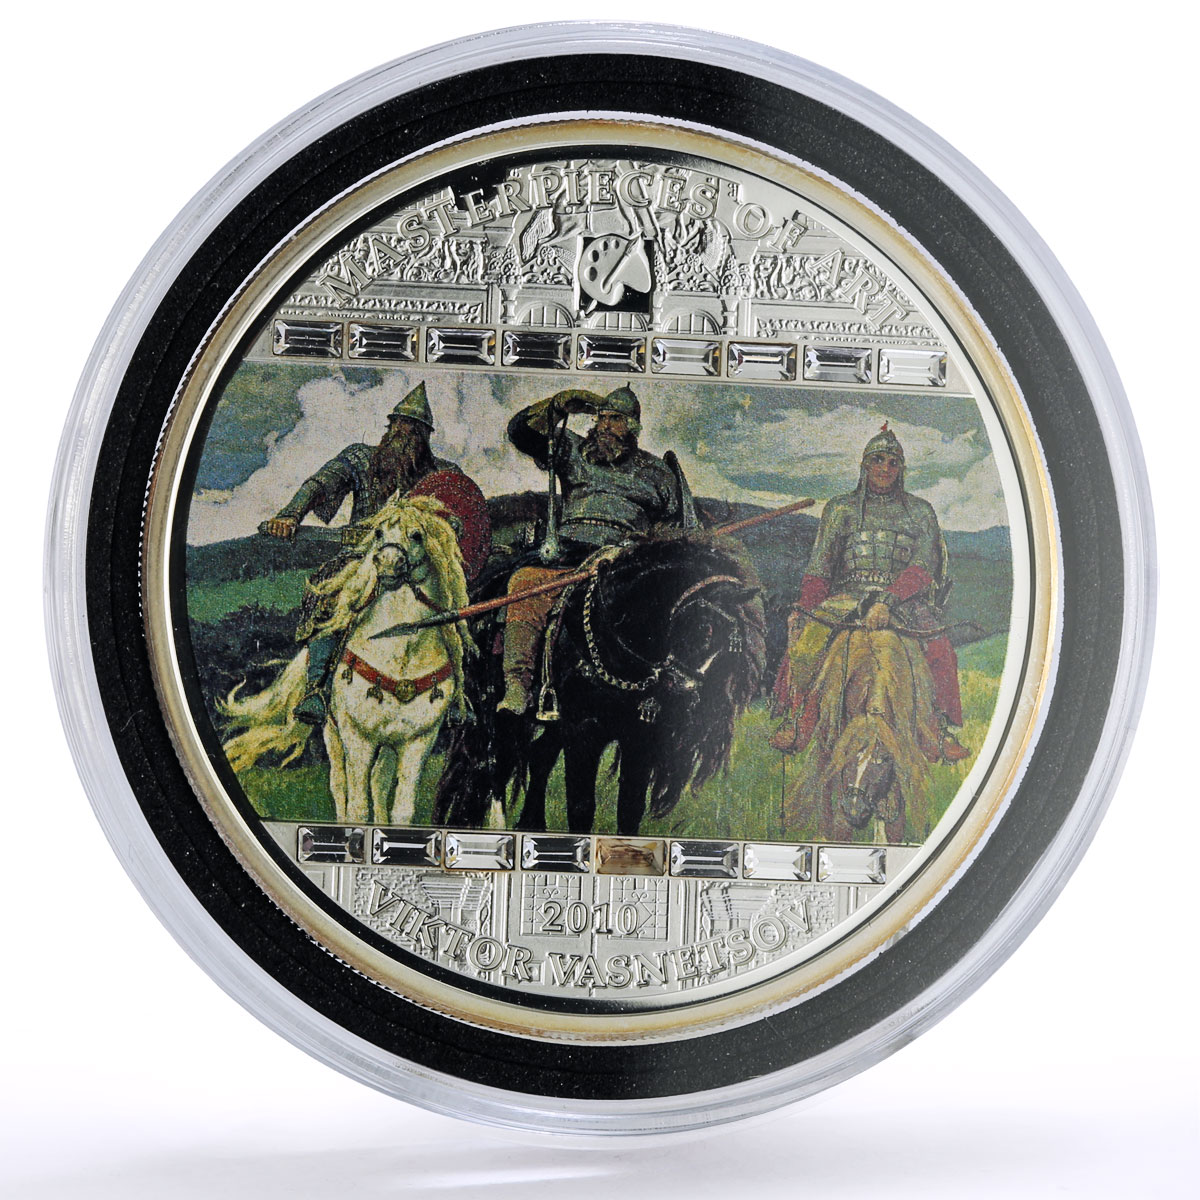 Cook Islands 20 $ Viktor Vasnetsov Art Bogatyrs Missing Crystal silver coin 2010